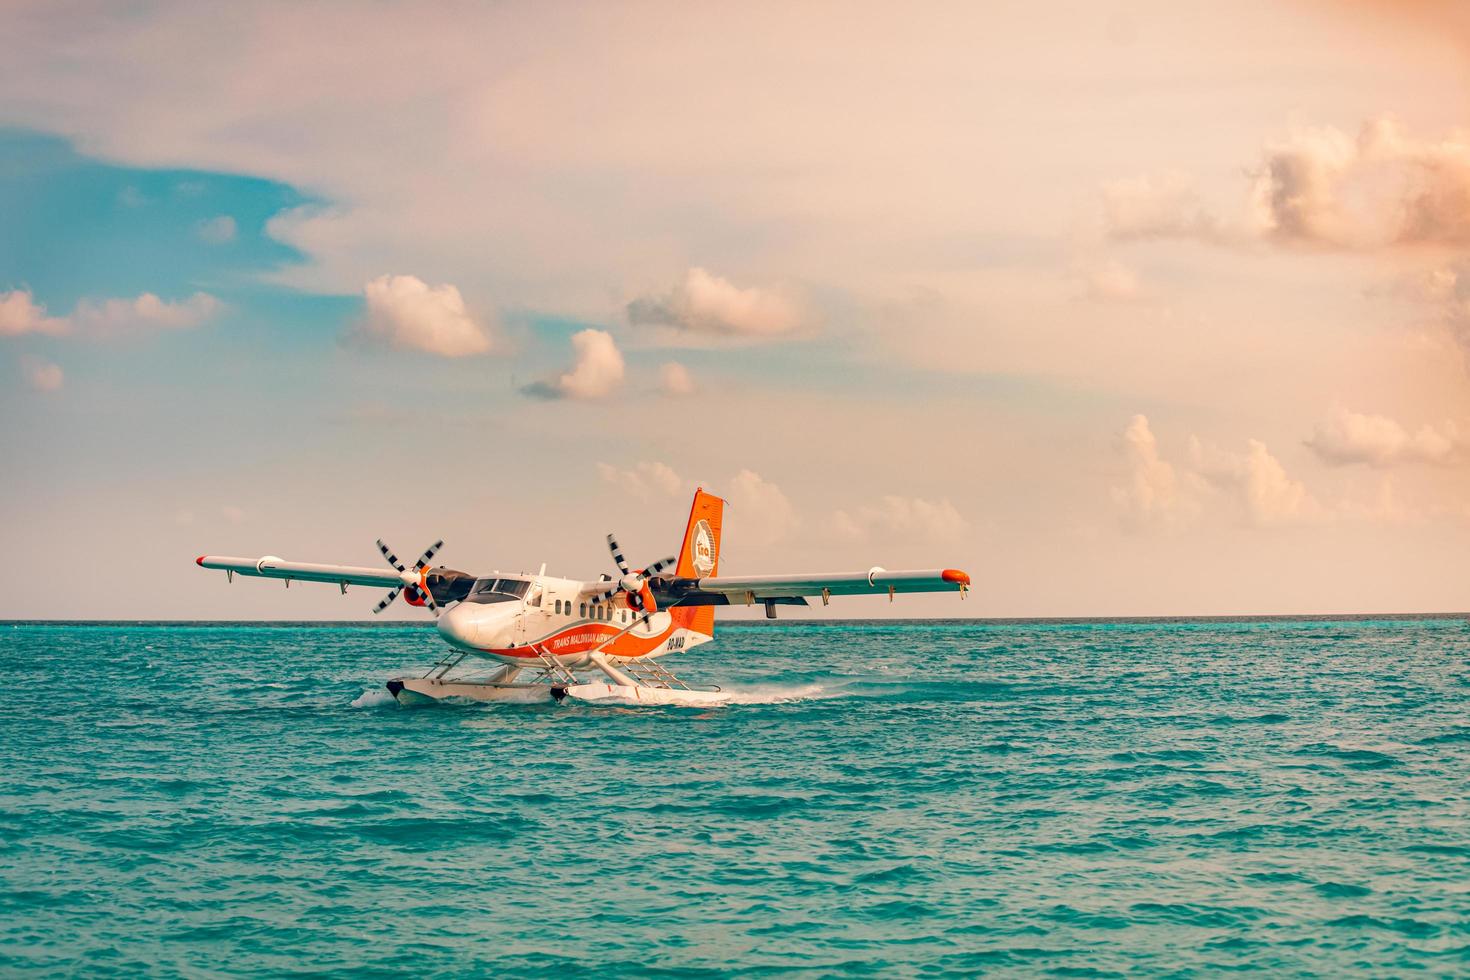 08.09.2019 - ari atoll, malediven exotische szene mit wasserflugzeug auf malediven seelandung. Wasserflugzeugtaxi auf dem Meer bei Sonnenuntergang vor dem Start. urlaub oder urlaub auf den malediven konzepthintergrund. Lufttransport foto